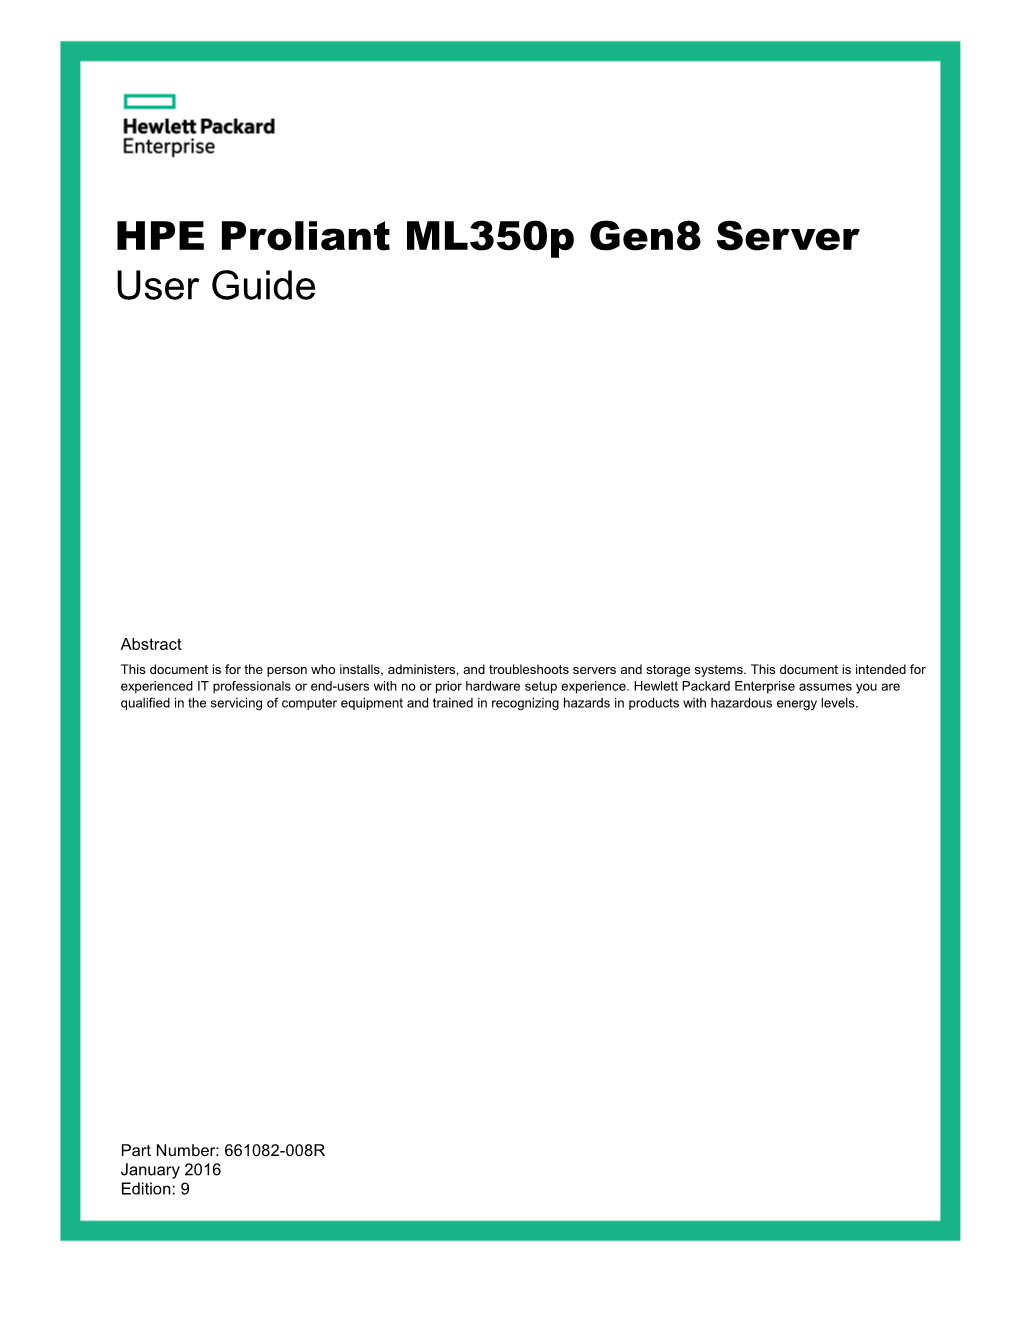 HPE Proliant Ml350p Gen8 Server User Guide